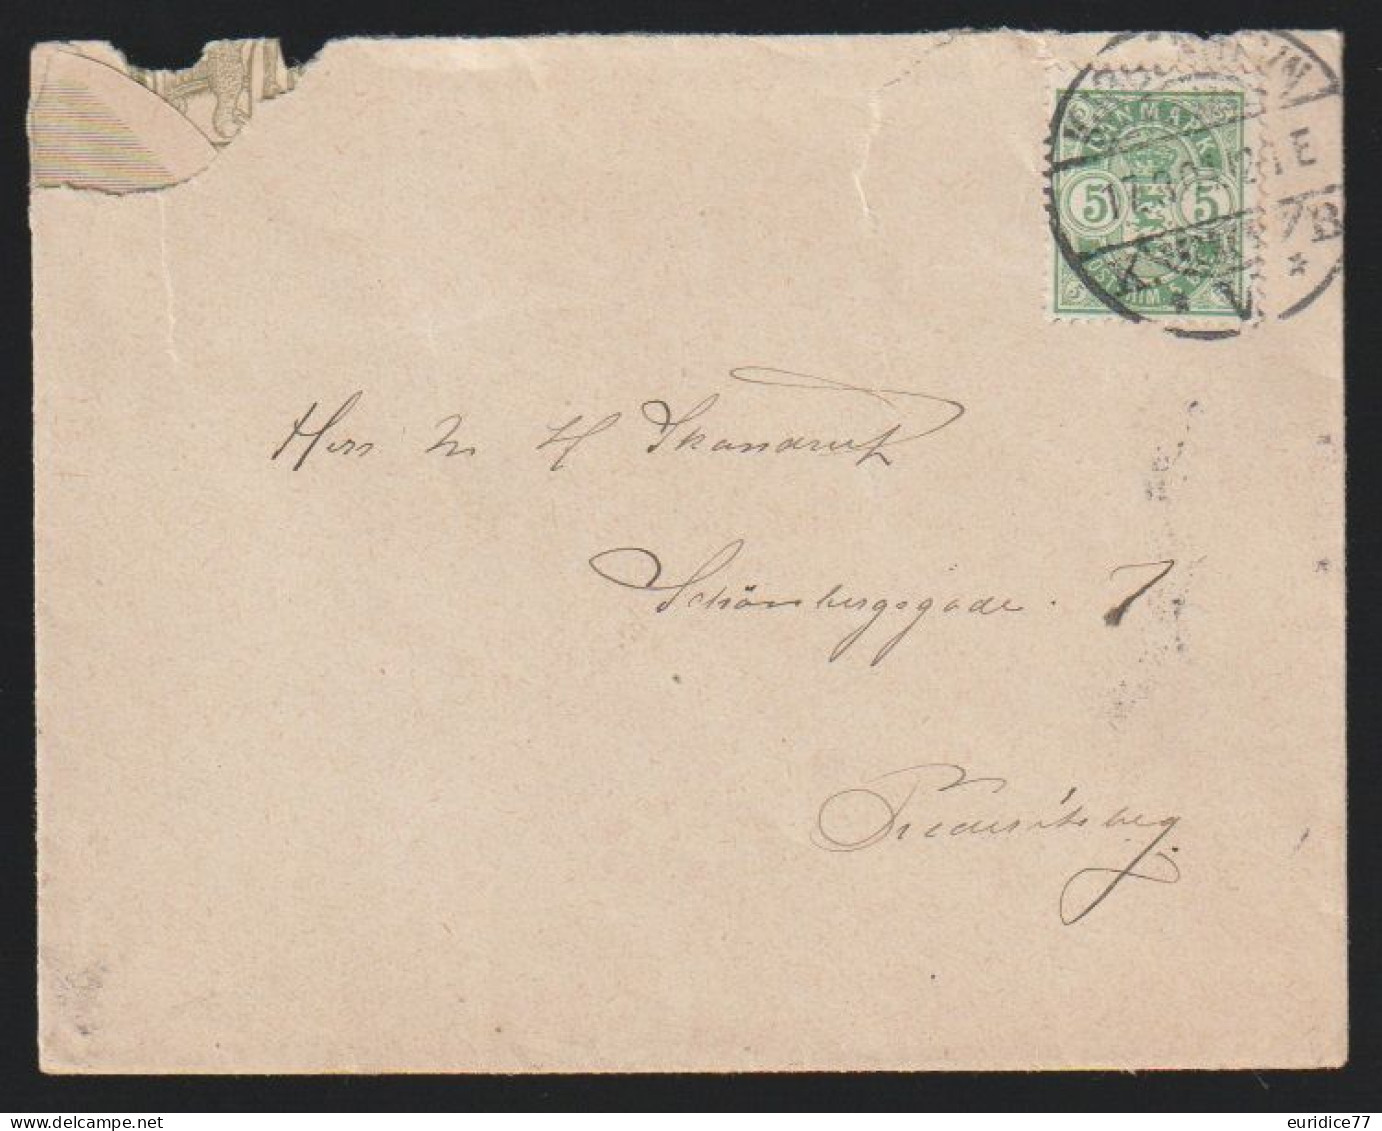 Danemark Denmark 1884 Enveloppe Avec Obliteration - Covers & Documents